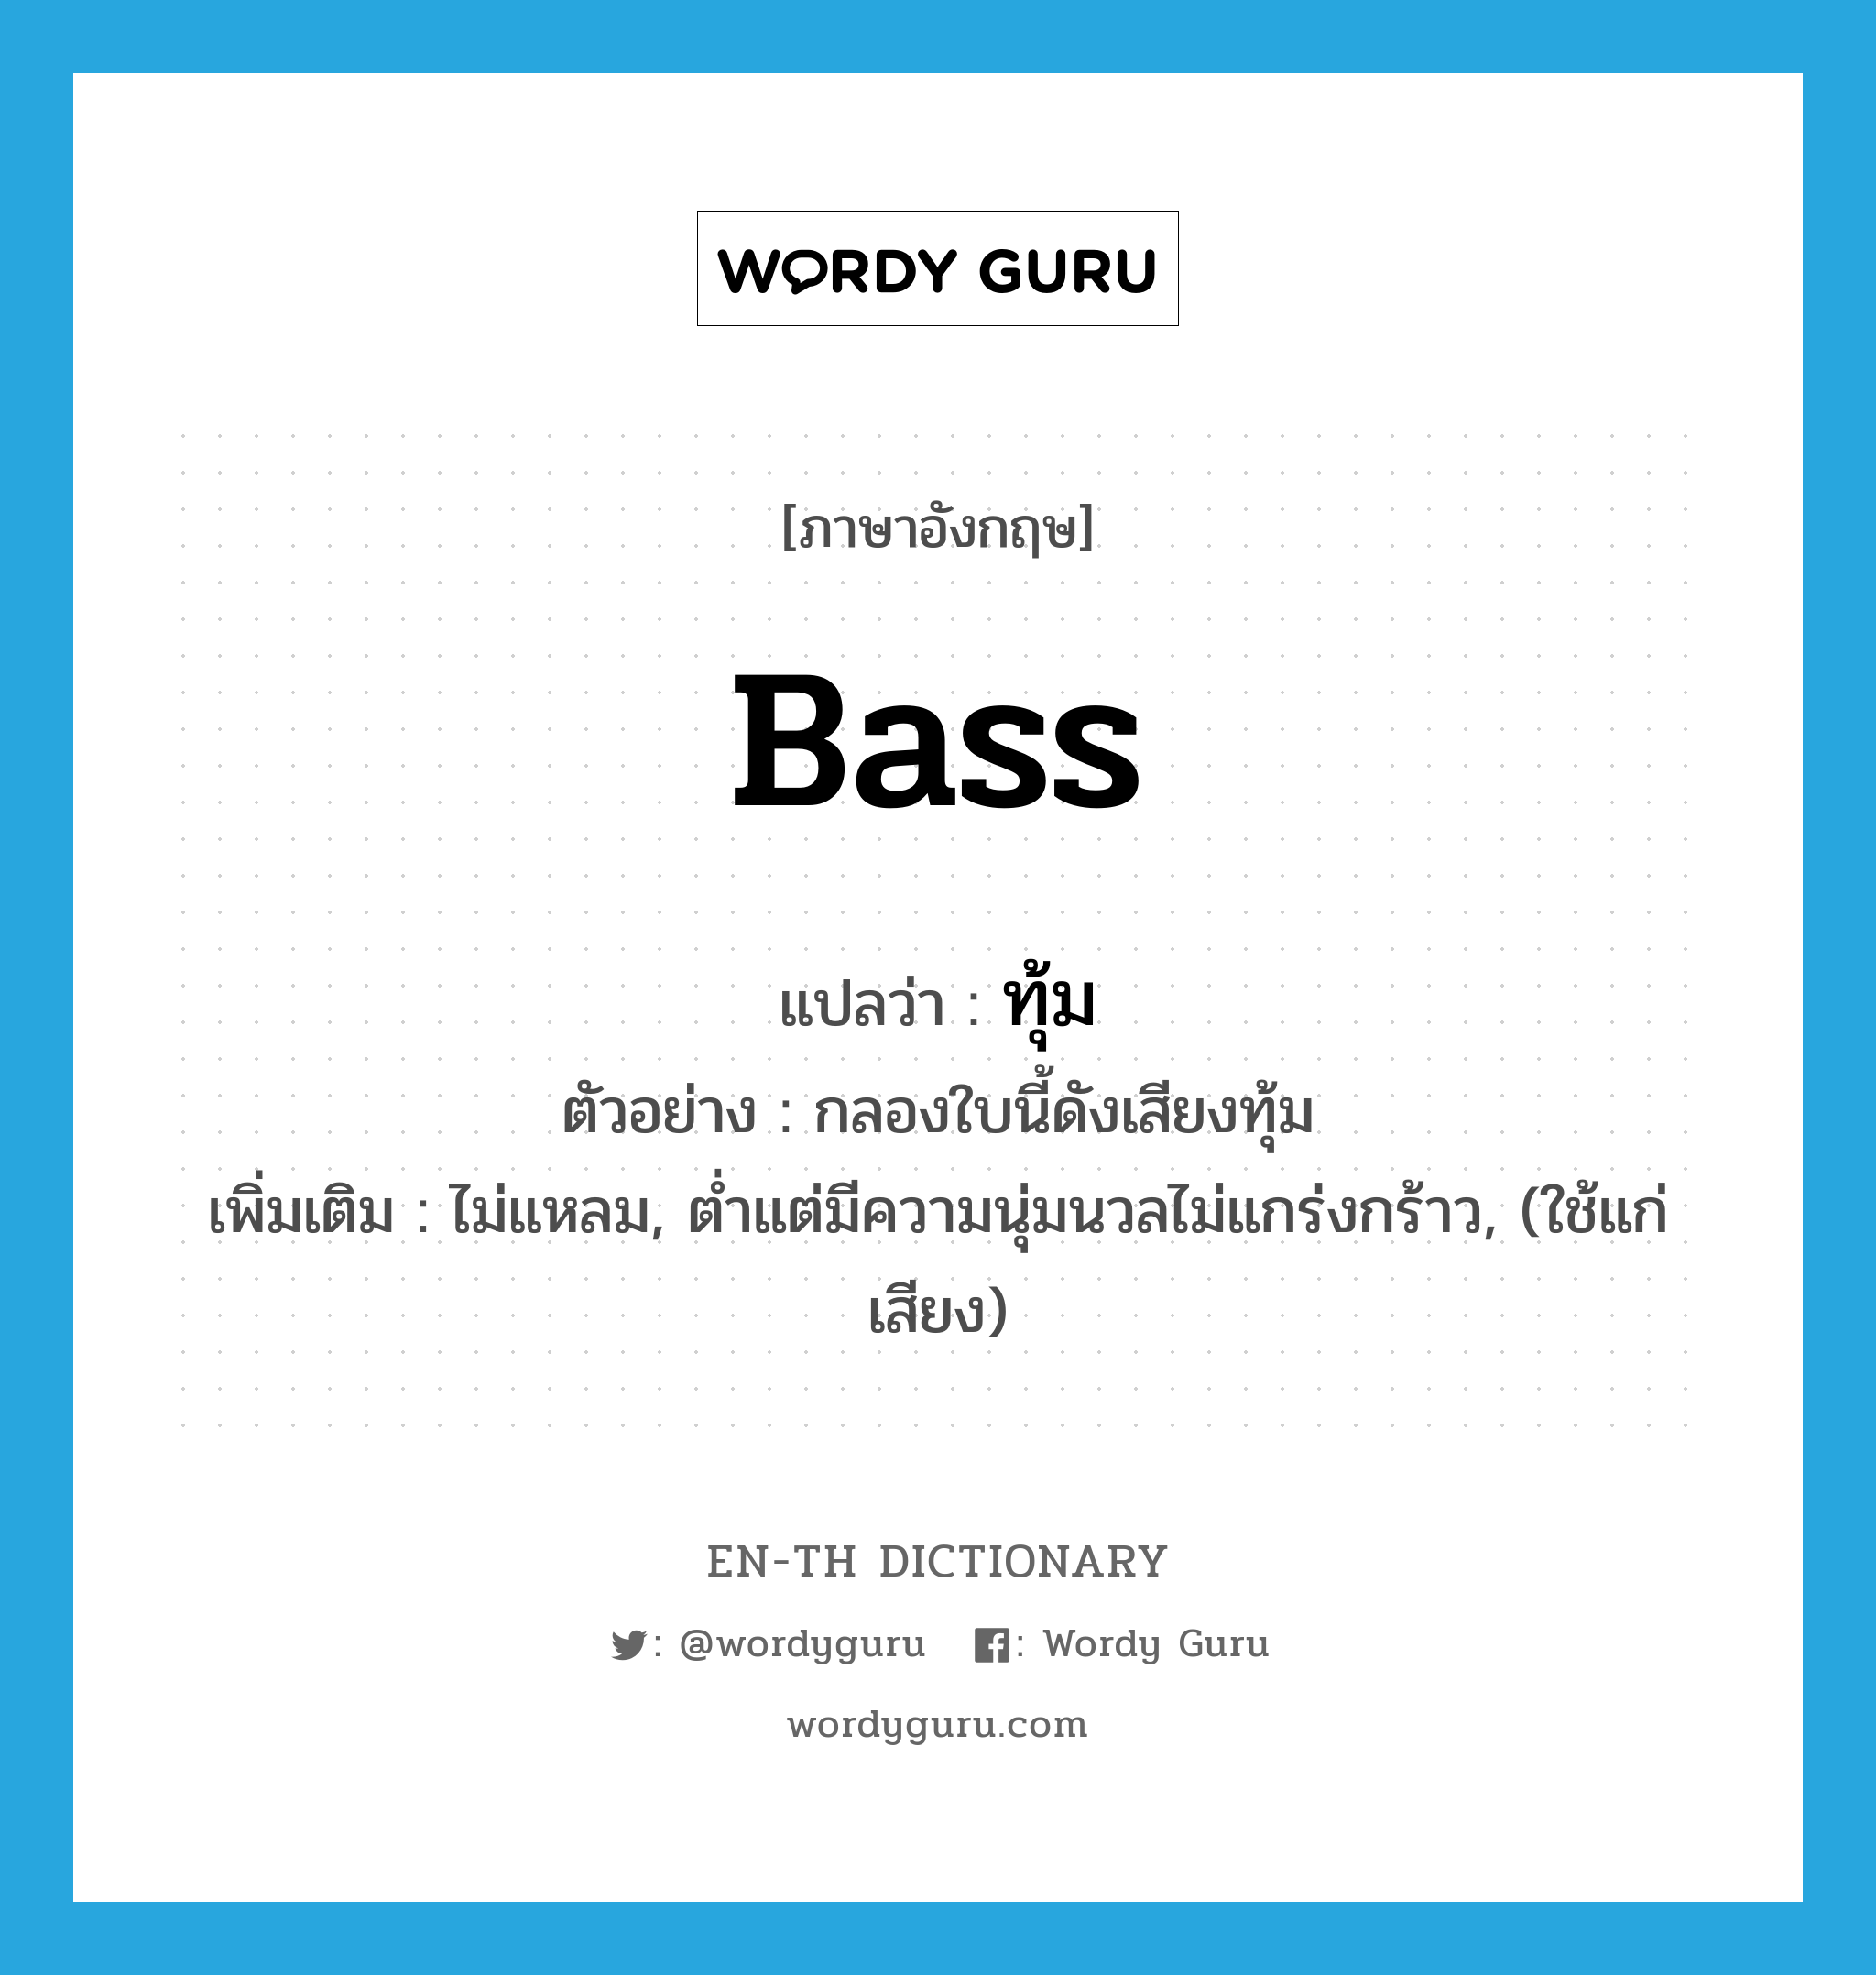 bass แปลว่า?, คำศัพท์ภาษาอังกฤษ bass แปลว่า ทุ้ม ประเภท ADJ ตัวอย่าง กลองใบนี้ดังเสียงทุ้ม เพิ่มเติม ไม่แหลม, ต่ำแต่มีความนุ่มนวลไม่แกร่งกร้าว, (ใช้แก่เสียง) หมวด ADJ